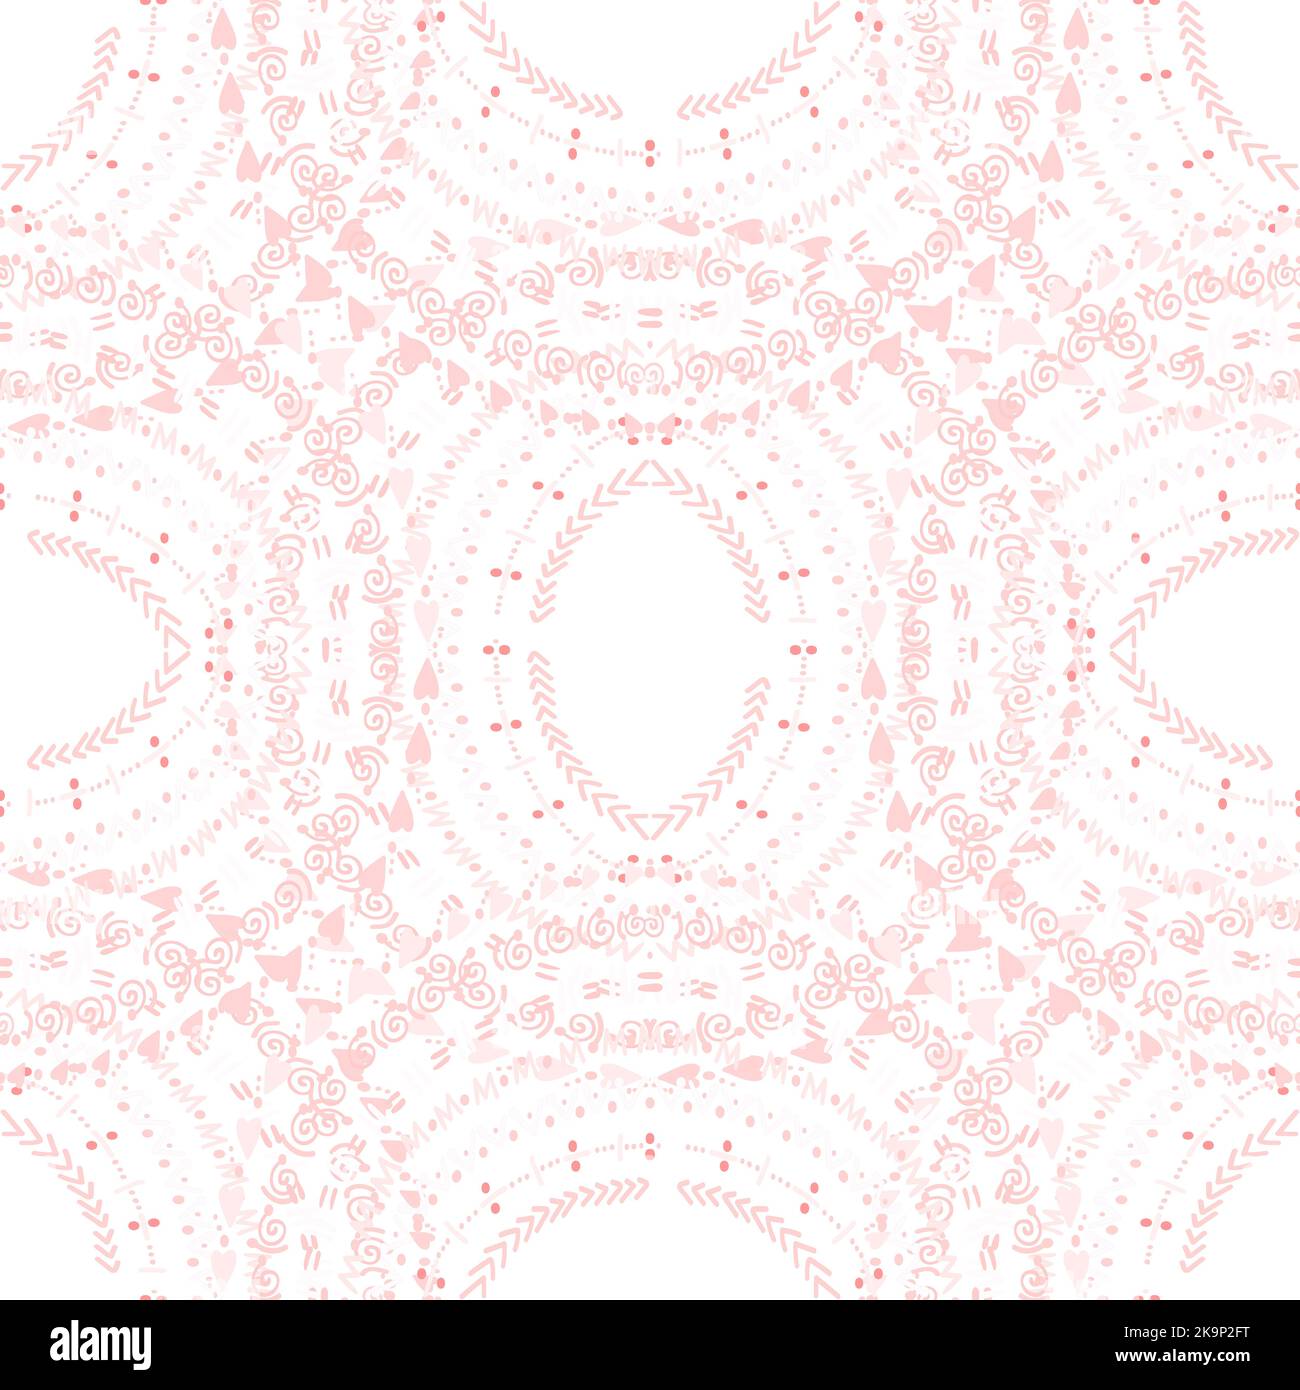 Nahtlose Textur von abstrakten Ornamenten im Kreis. Dekorative Muster für Tapeten, Web, Textilien, Drucke. Dekorative Formen im Ethno-Stil auf weißem Rücken Stock Vektor